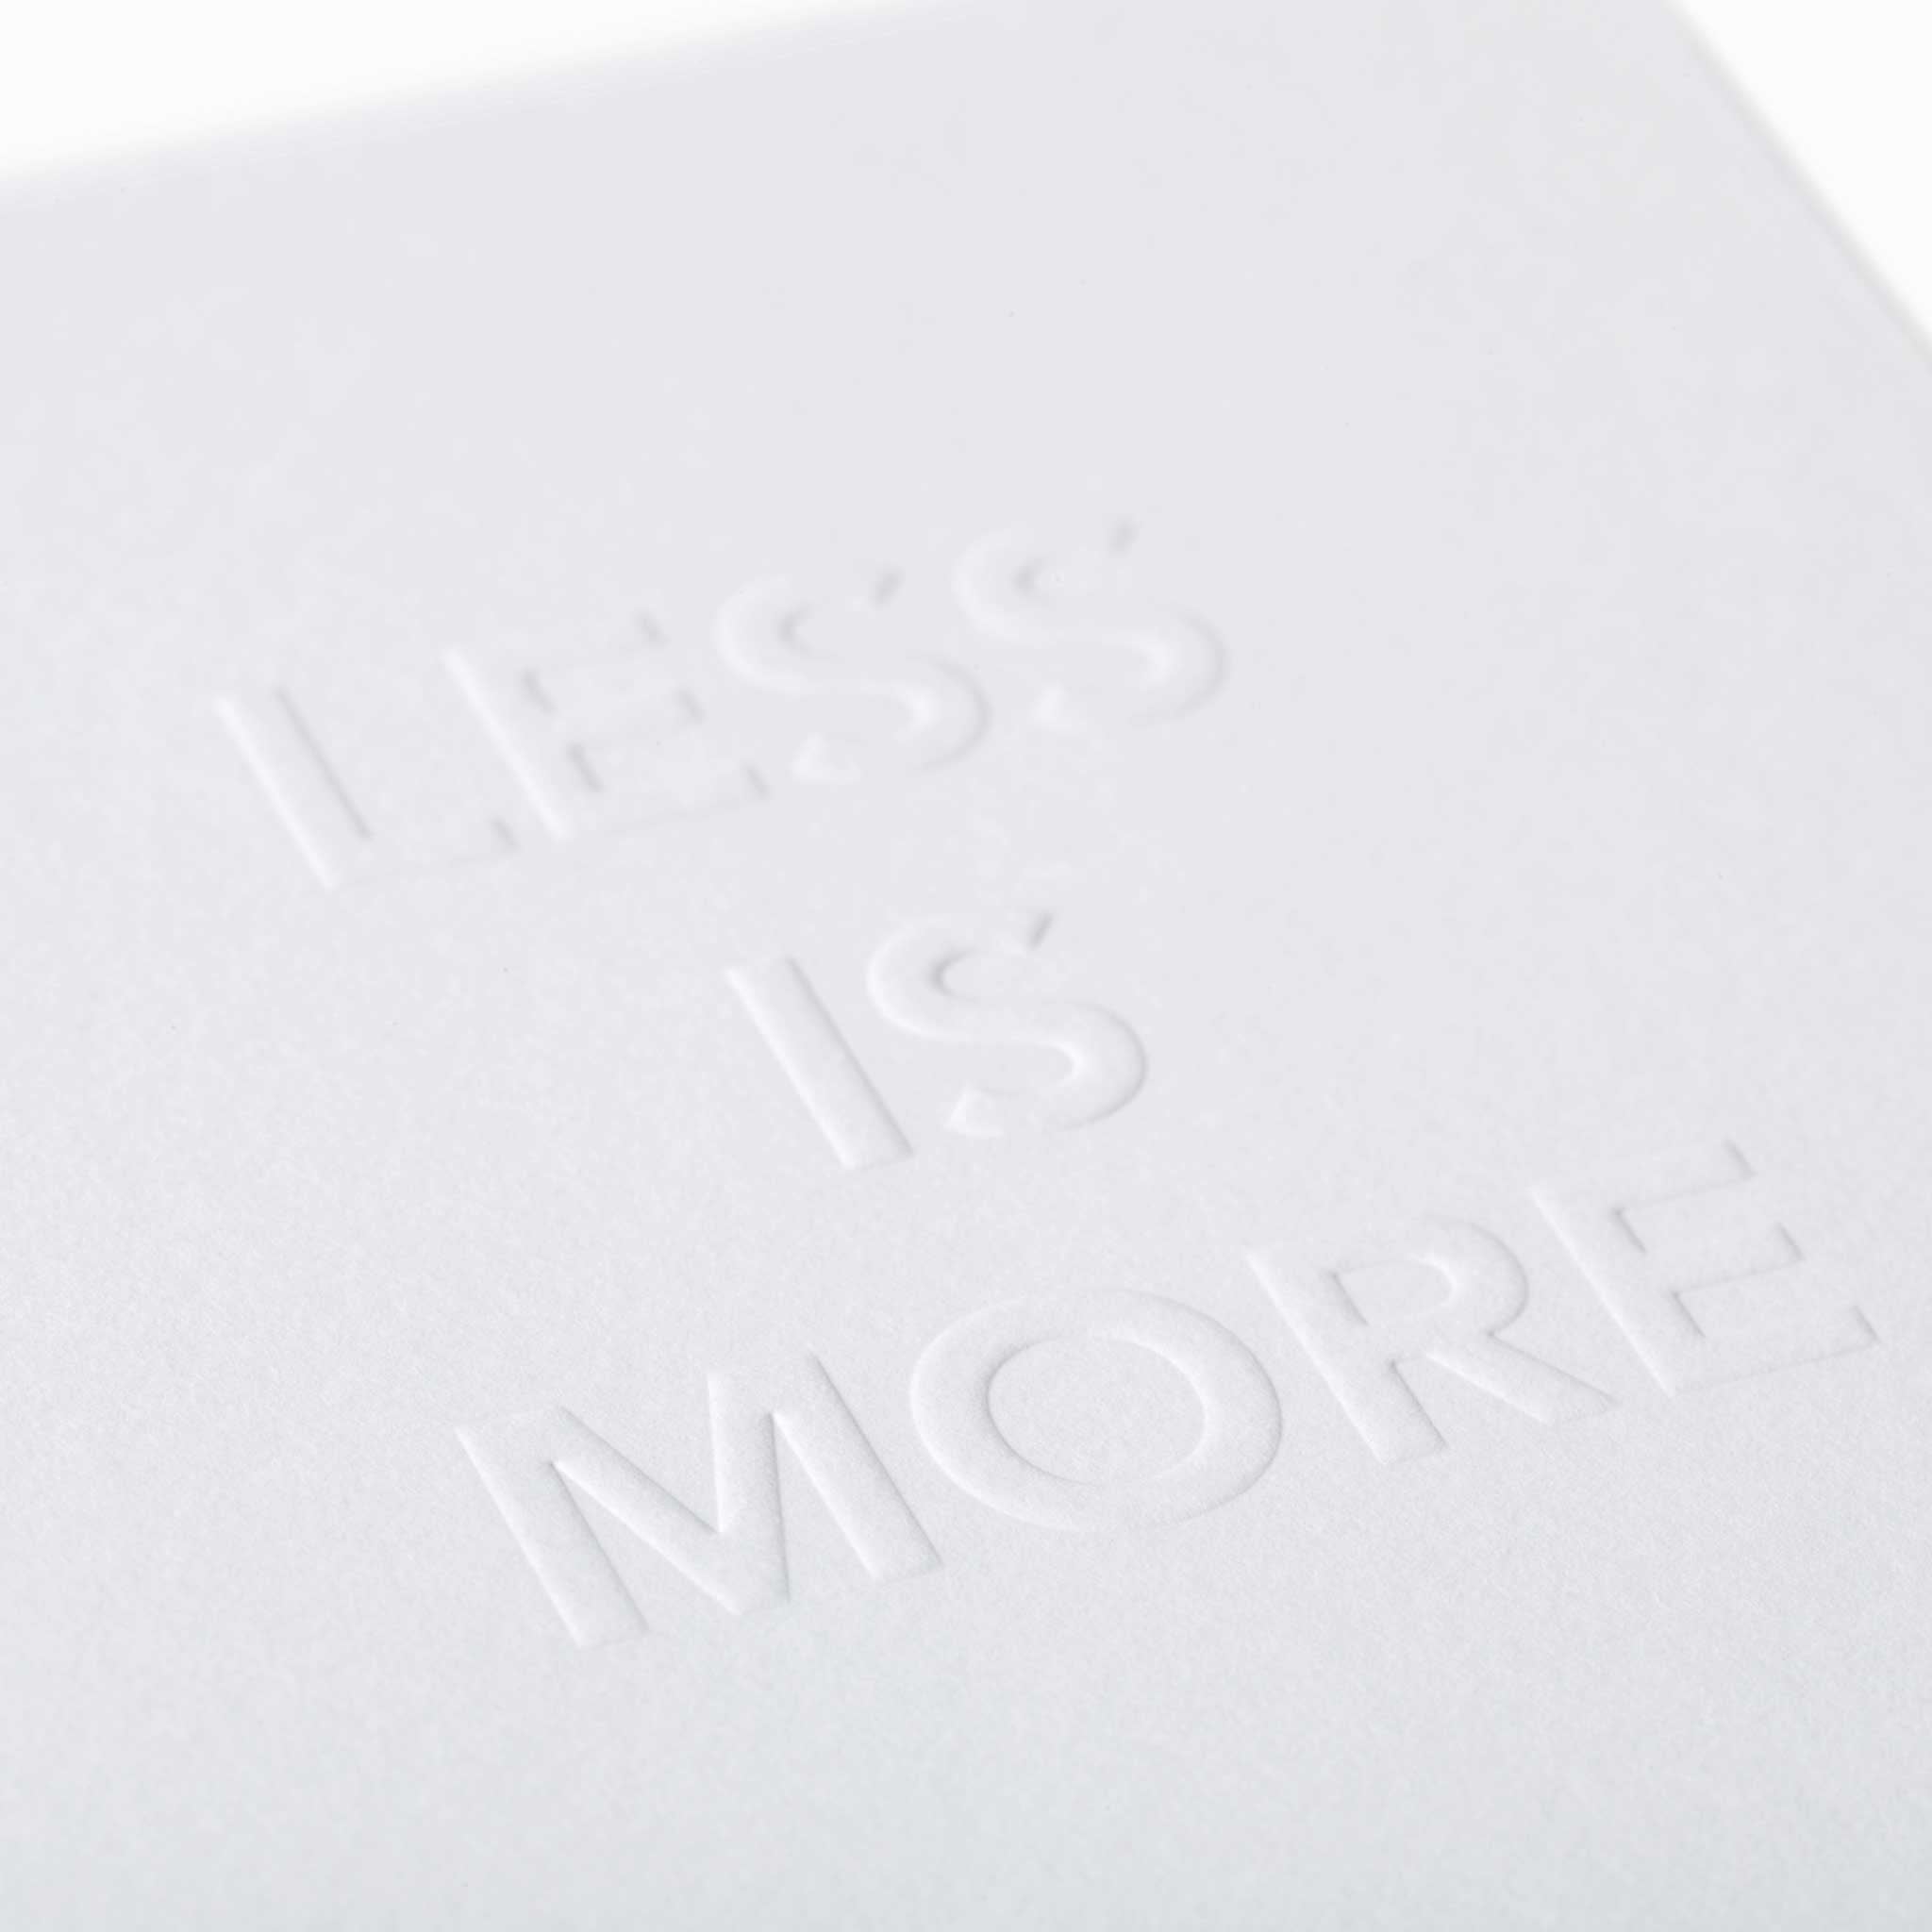 LESS IS MORE | GRUSSKARTE | Architekten Zitate | 10x15 cm | Cinqpoints